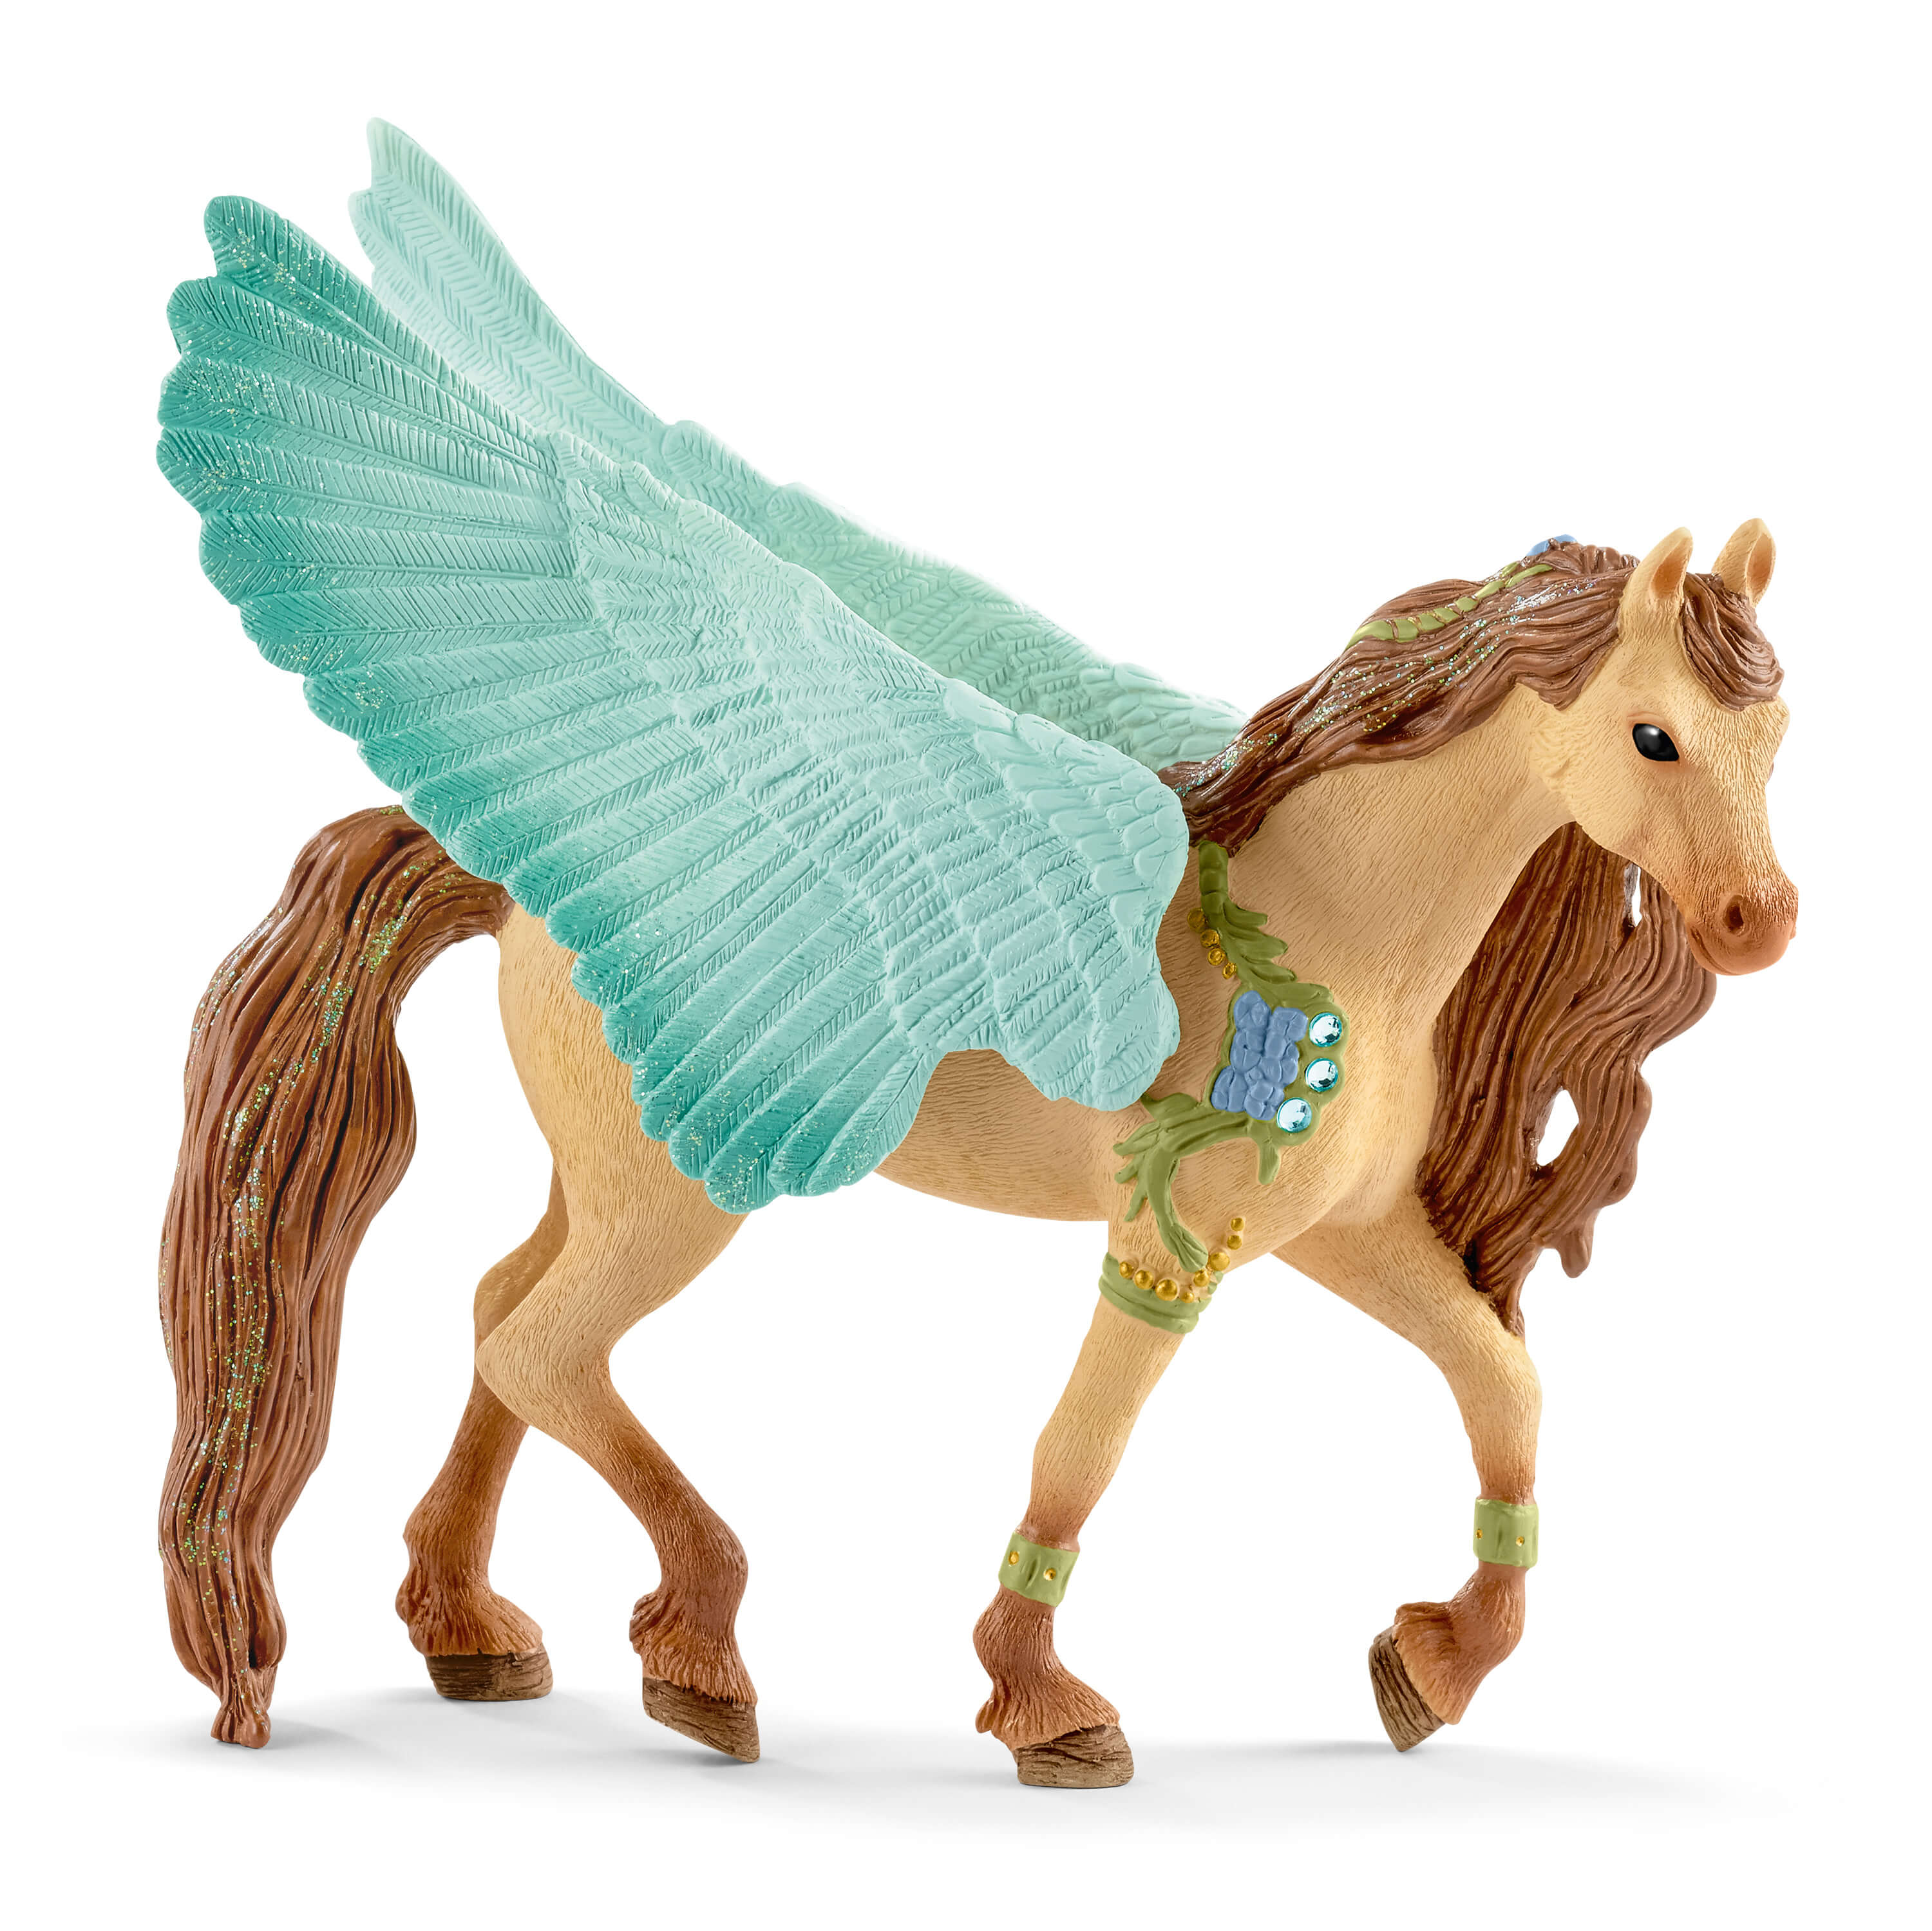 Decorated Pegasus stallion